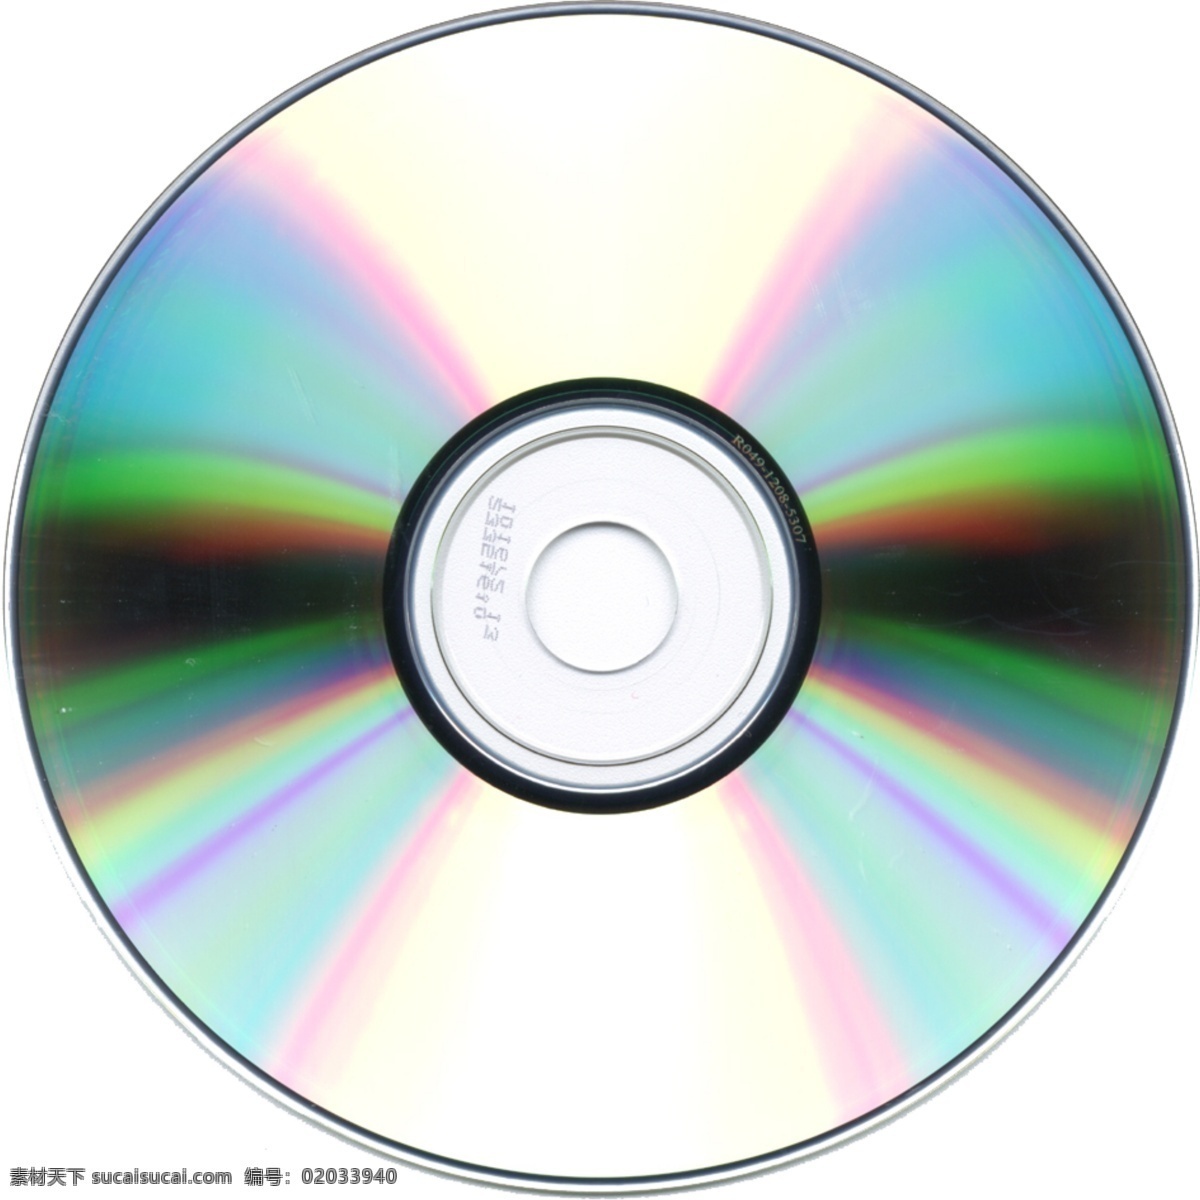 電腦 光碟 cd 白色